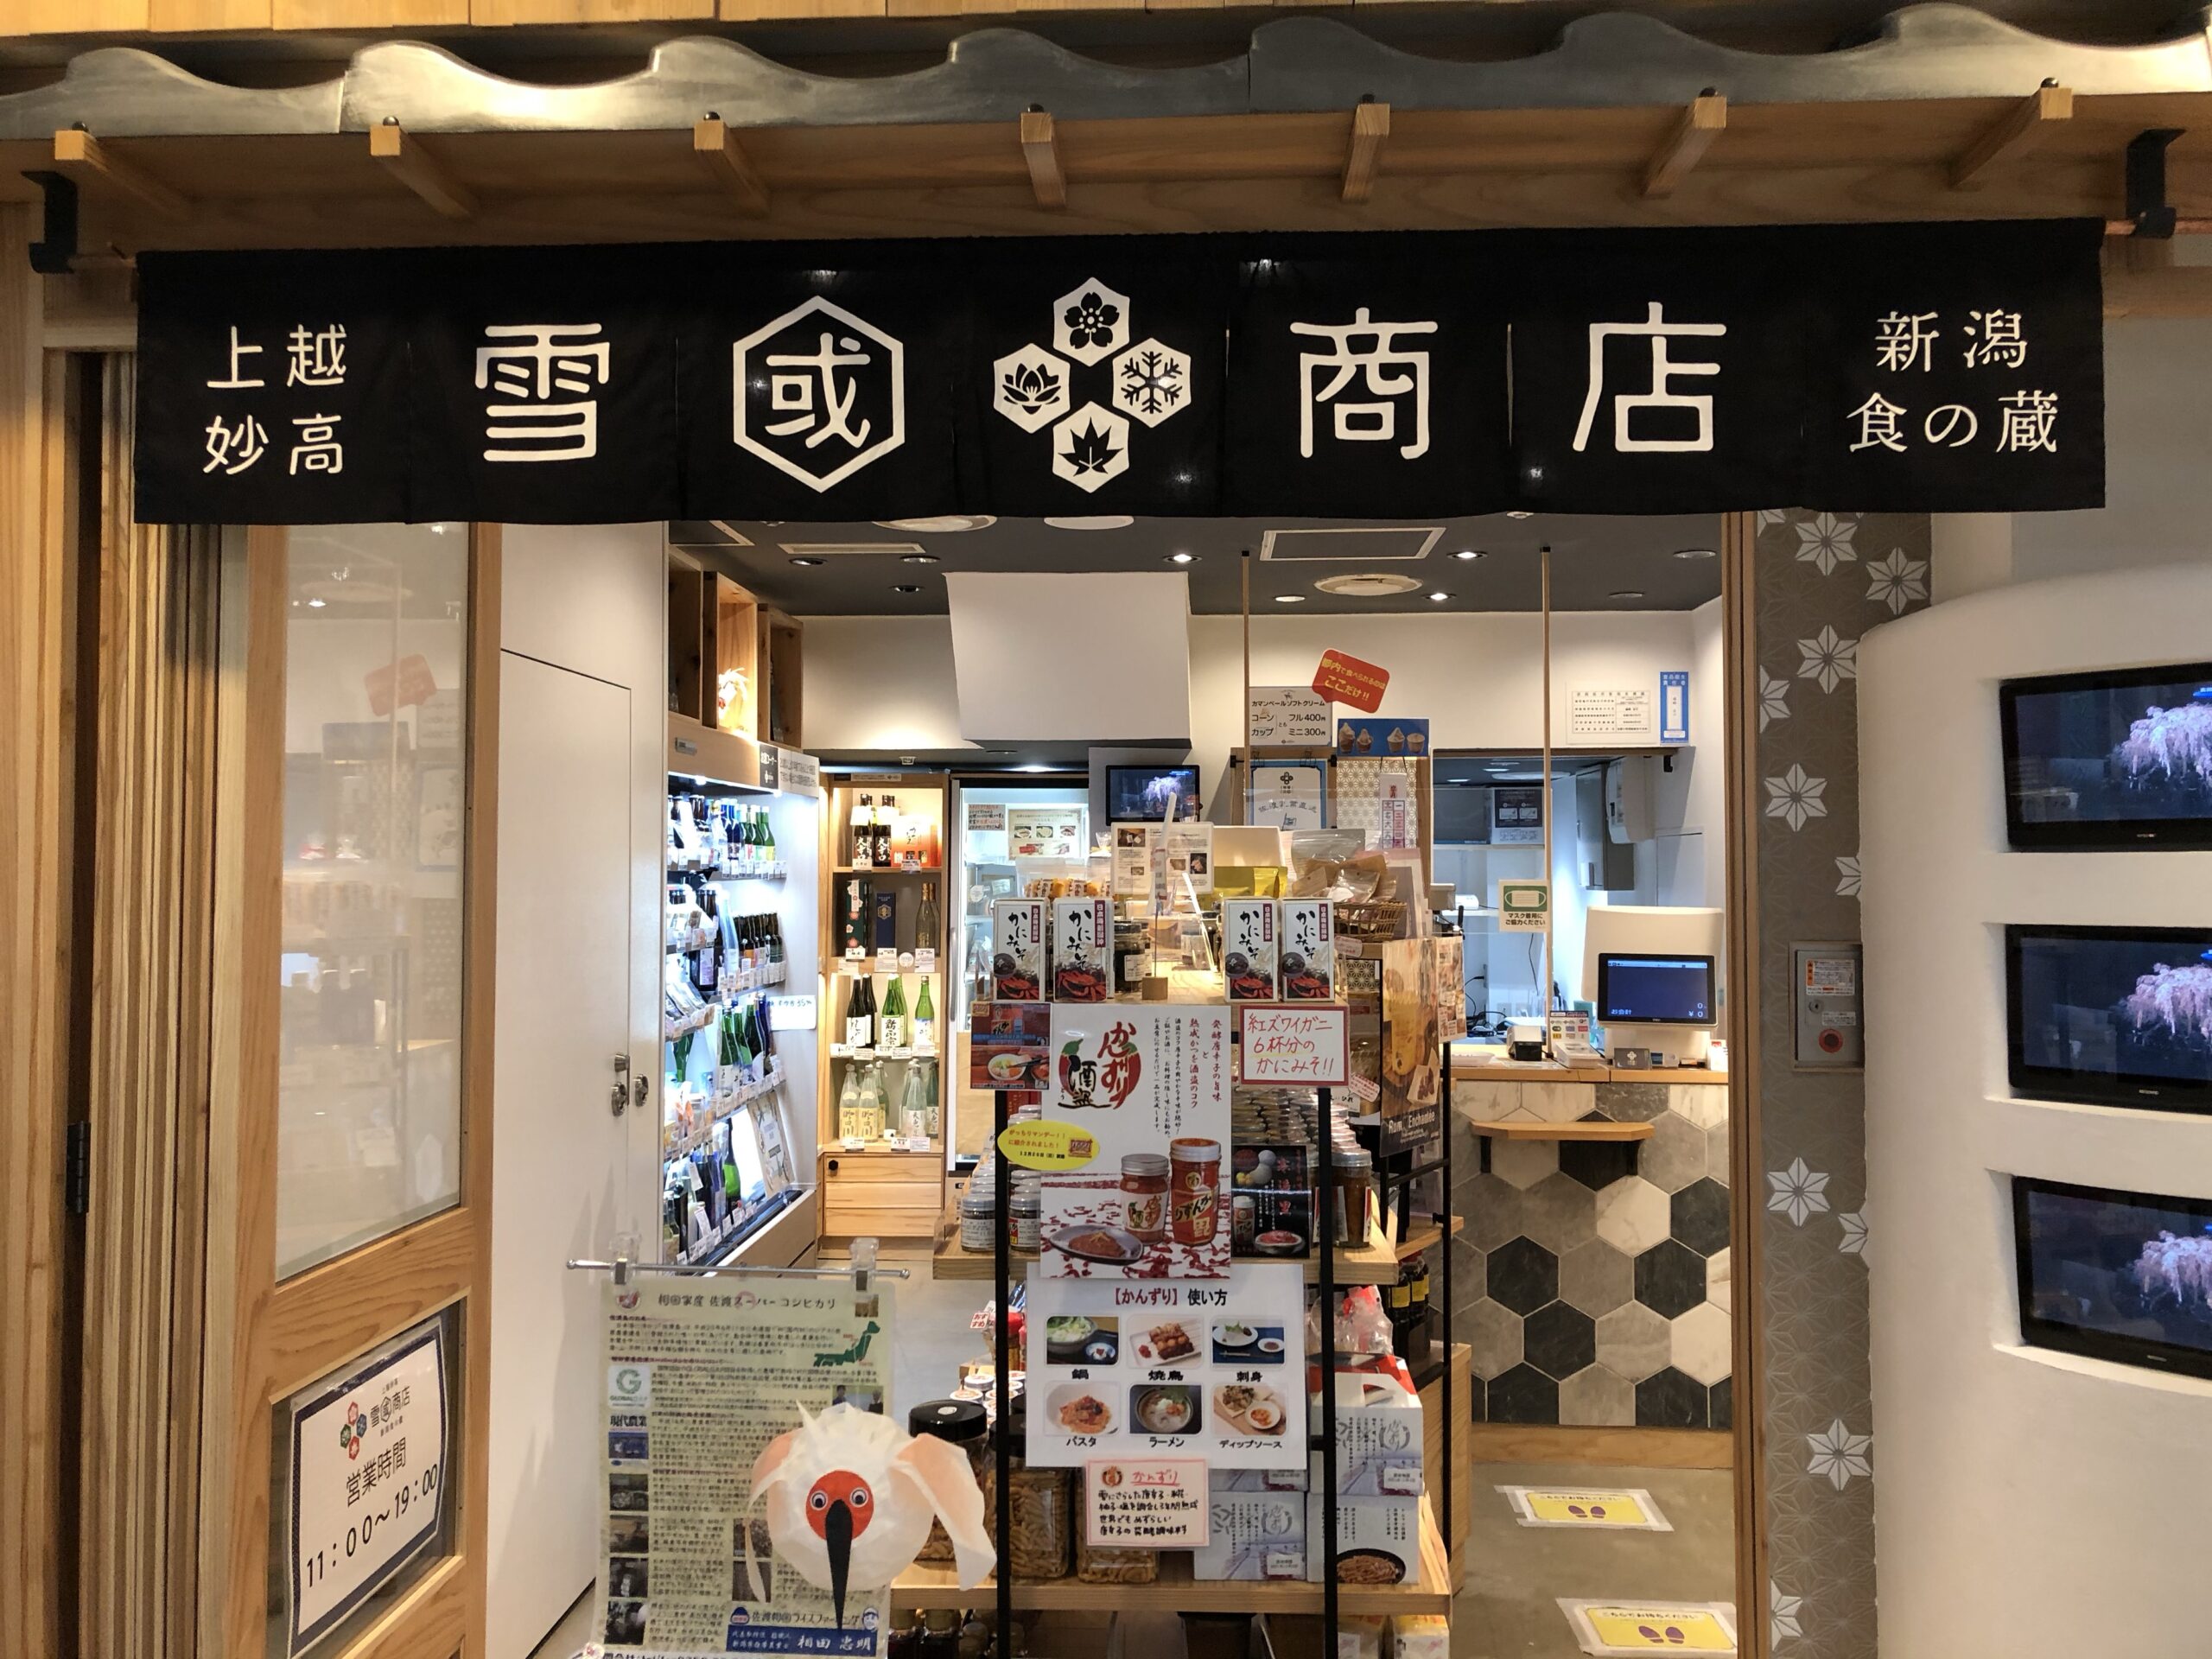 「上越妙高 雪國商店 新潟食の蔵」雪国の恵みと辛みを召し上がれ